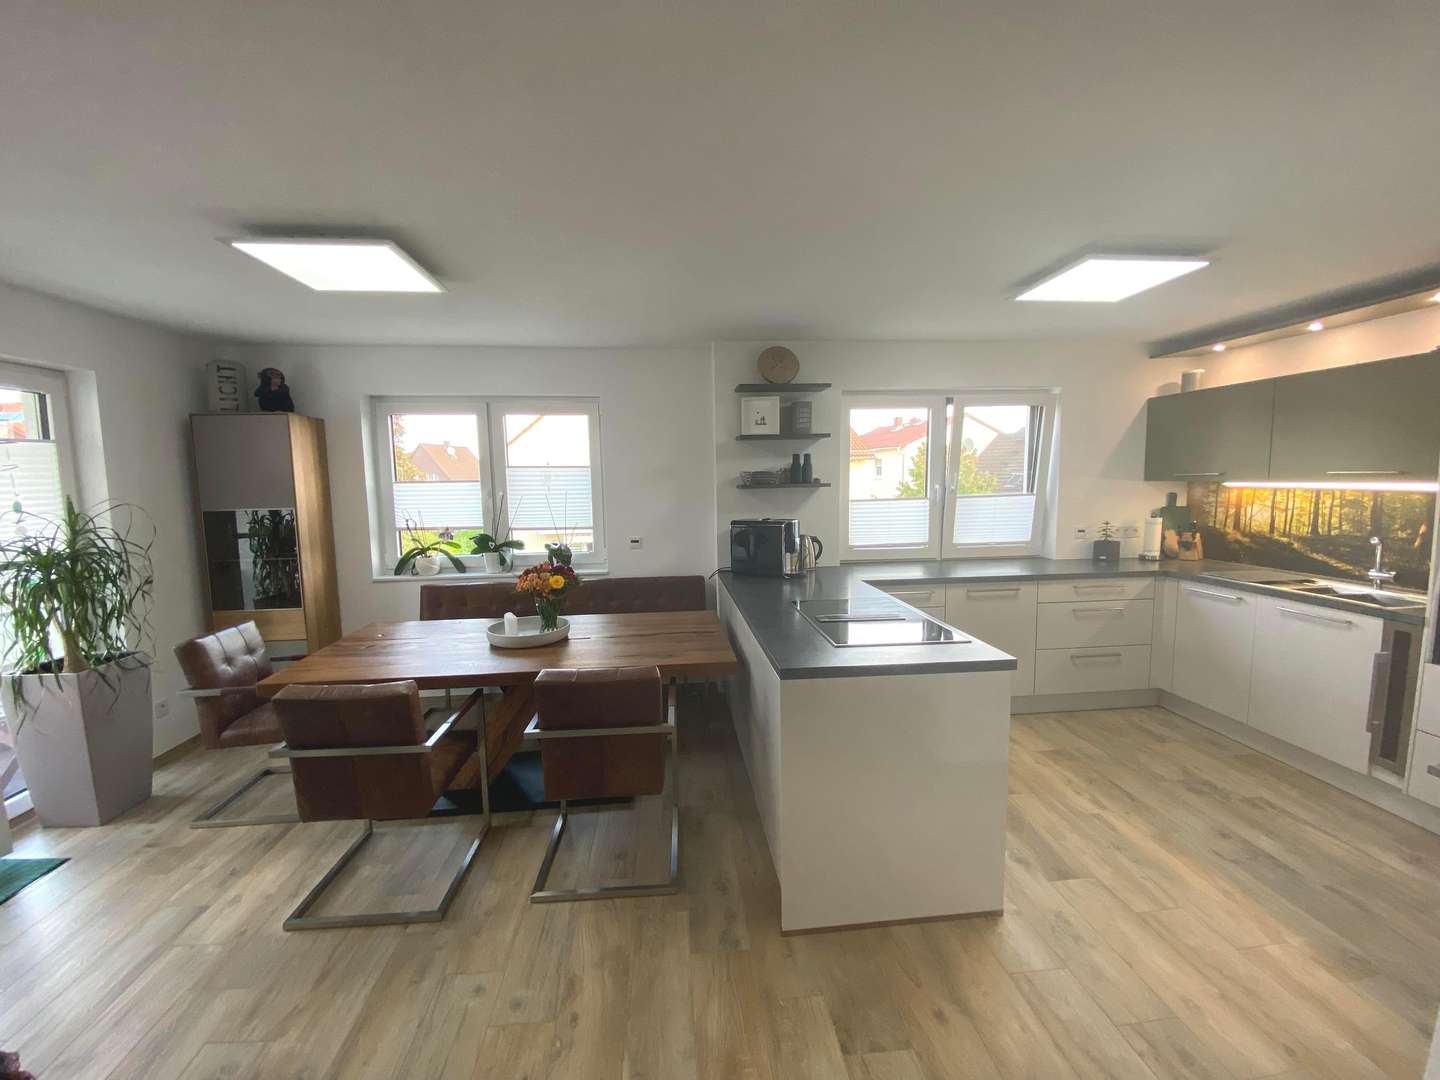 Küche mit Essbereich - Maisonette-Wohnung in 68642 Bürstadt mit 108m² kaufen